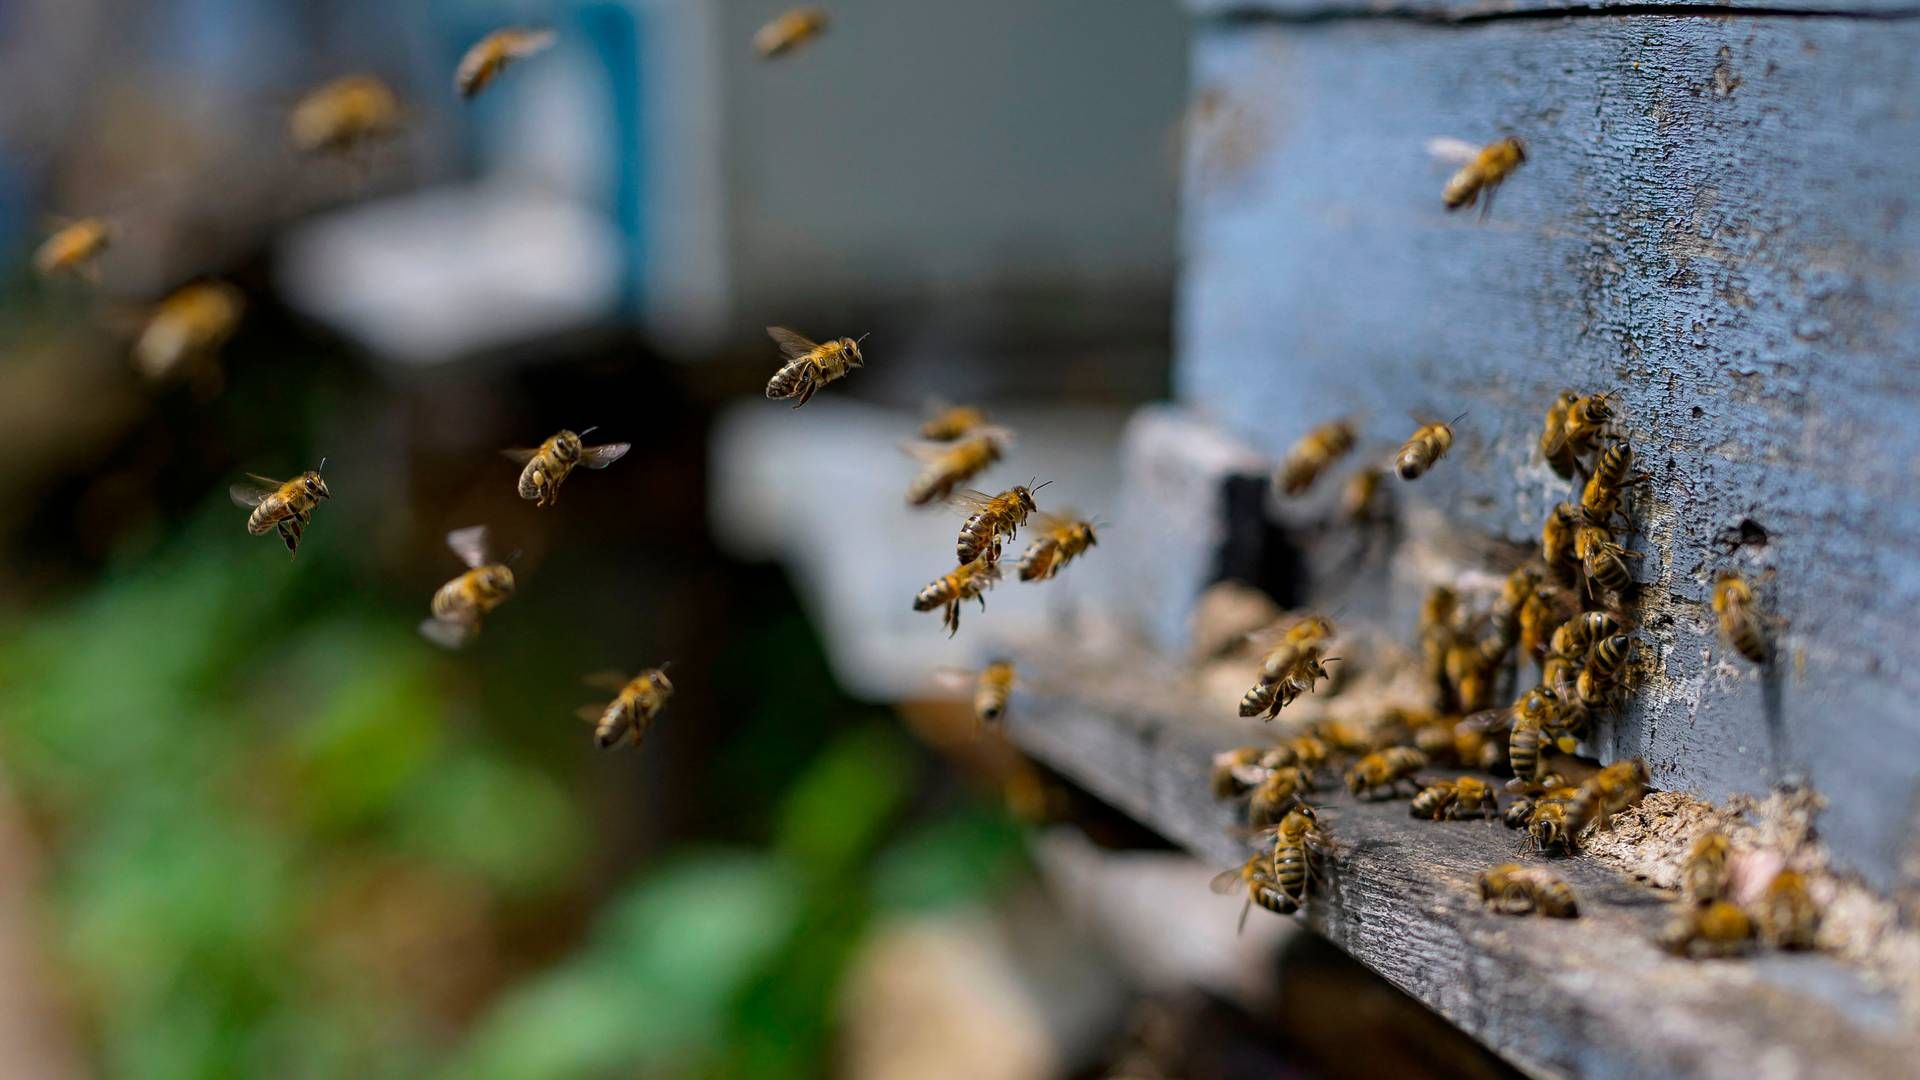 Landbruget fylder meget i Danmark, og derfor er det her, der ifølge biavlerne skal gøres en indsats for at hjælpe bierne. | Foto: Yasin Akgul